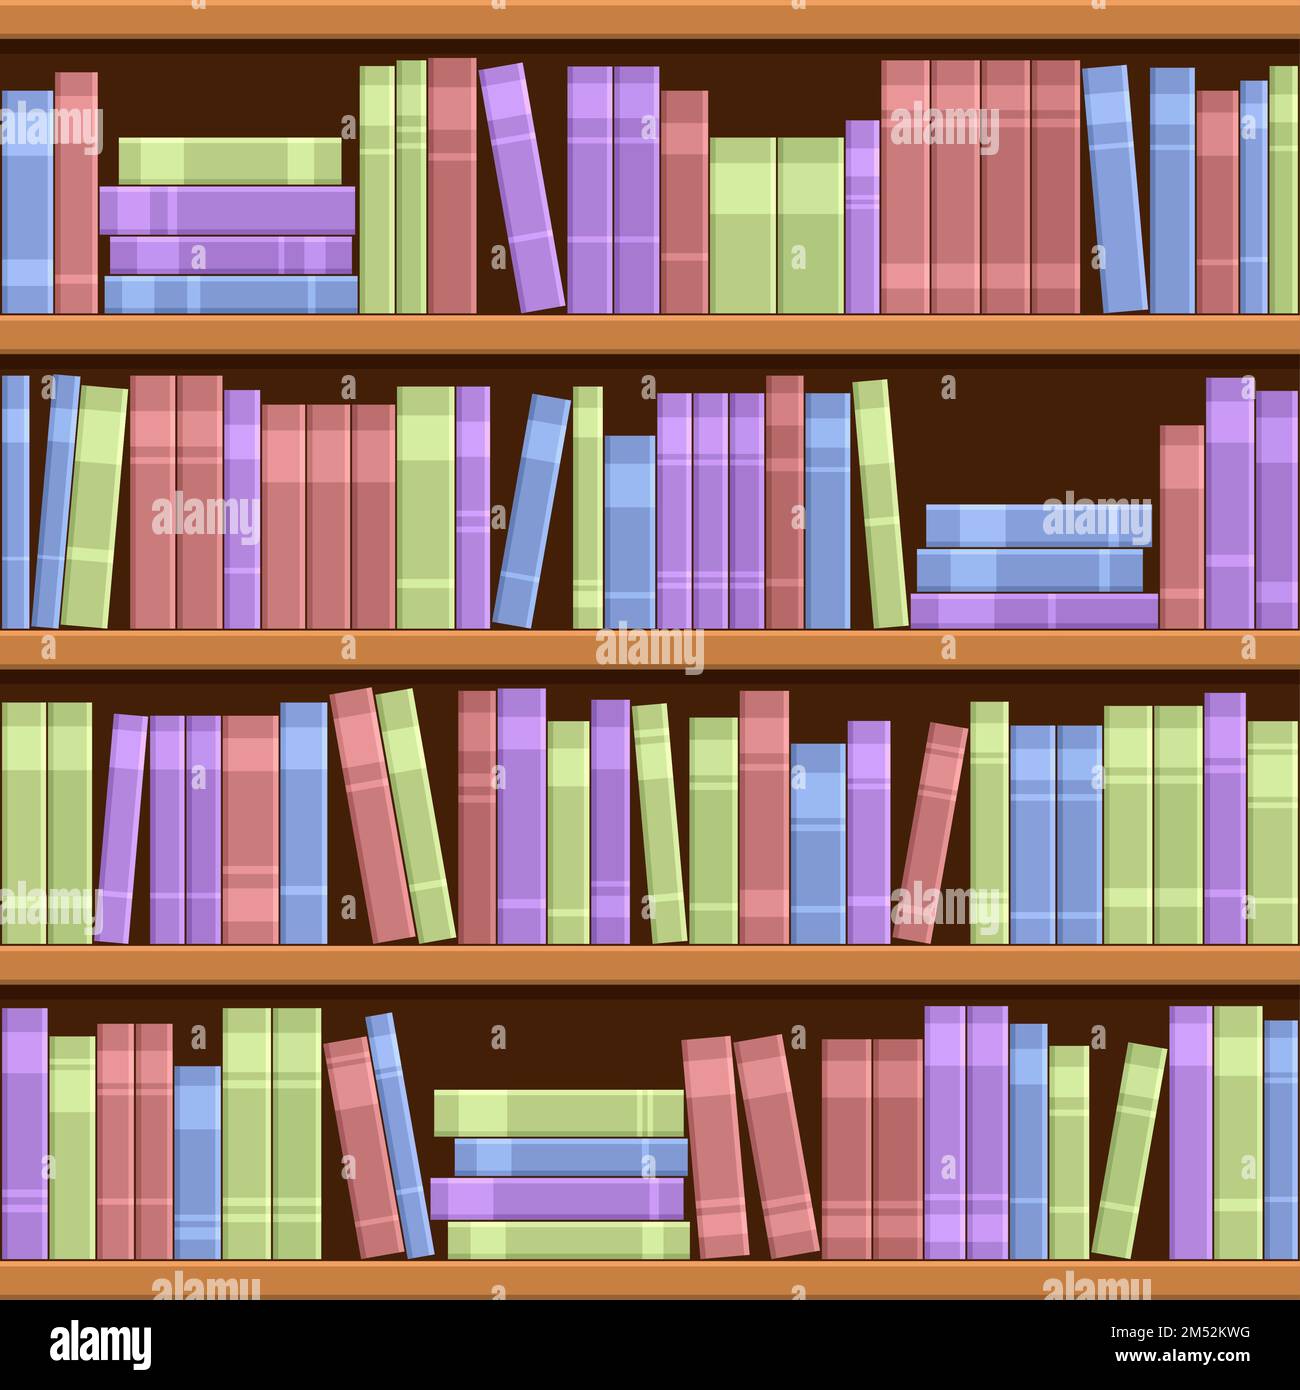 Vier Bücherregale. Mehrfarbige Variante der Bücherregale. Stock Vektor